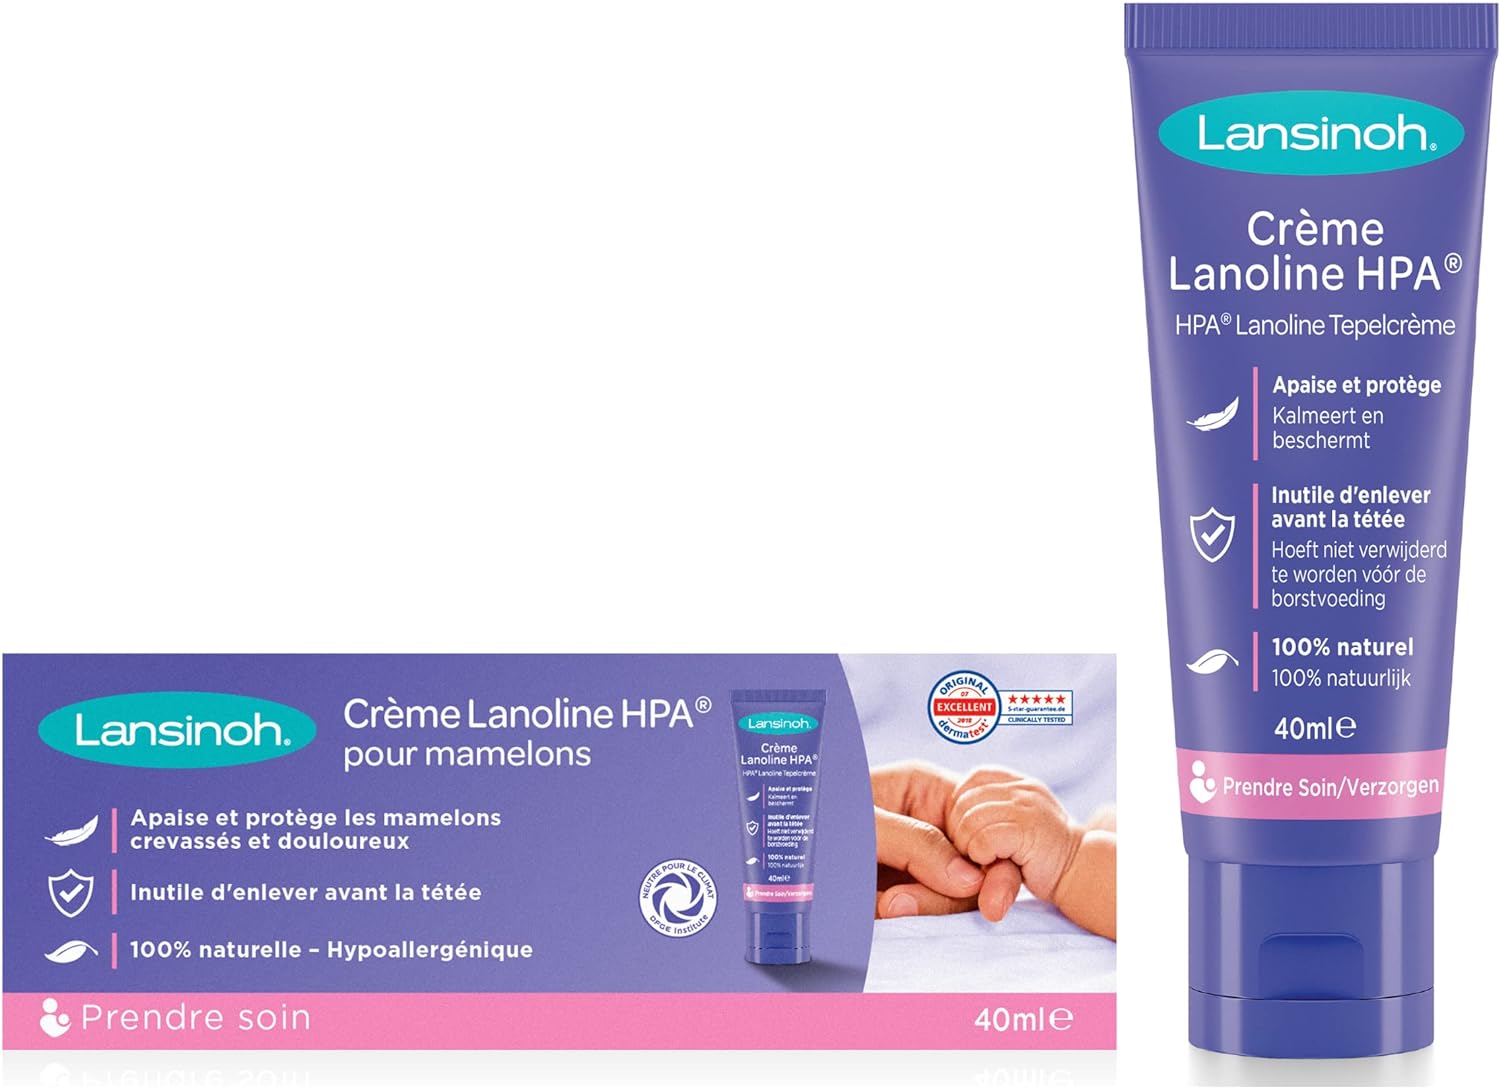 Lansinoh - La lanoline HPA 40 ml